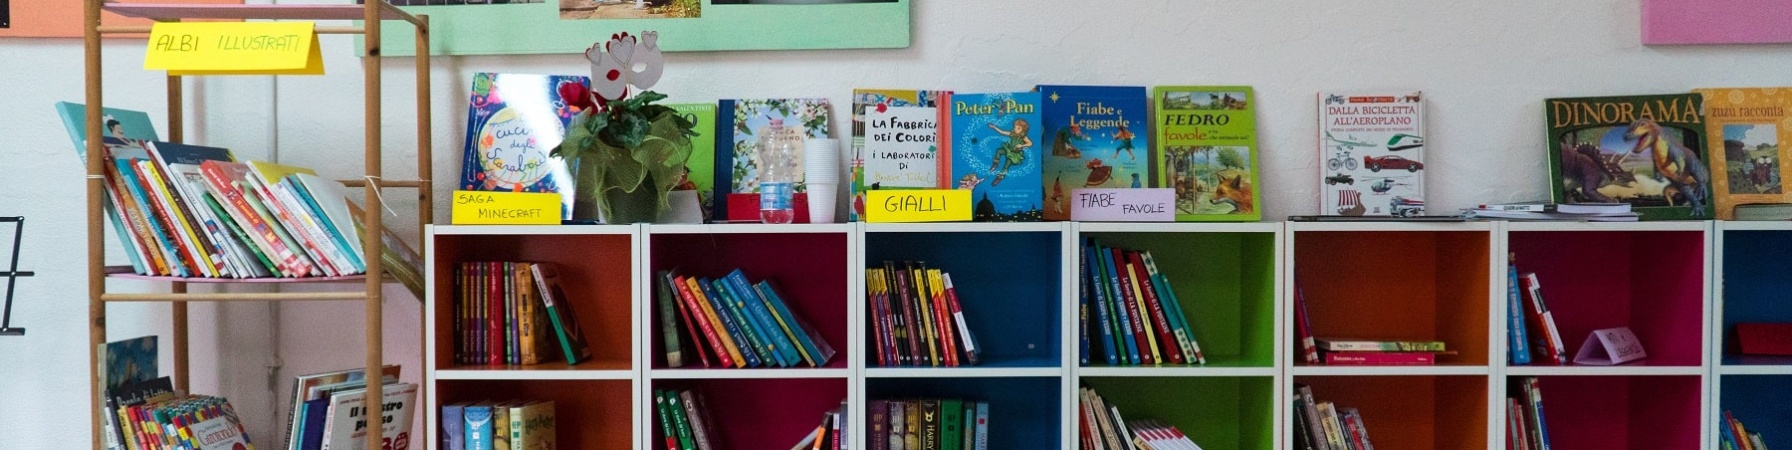 libreria con libri per bambini 0-5 anni